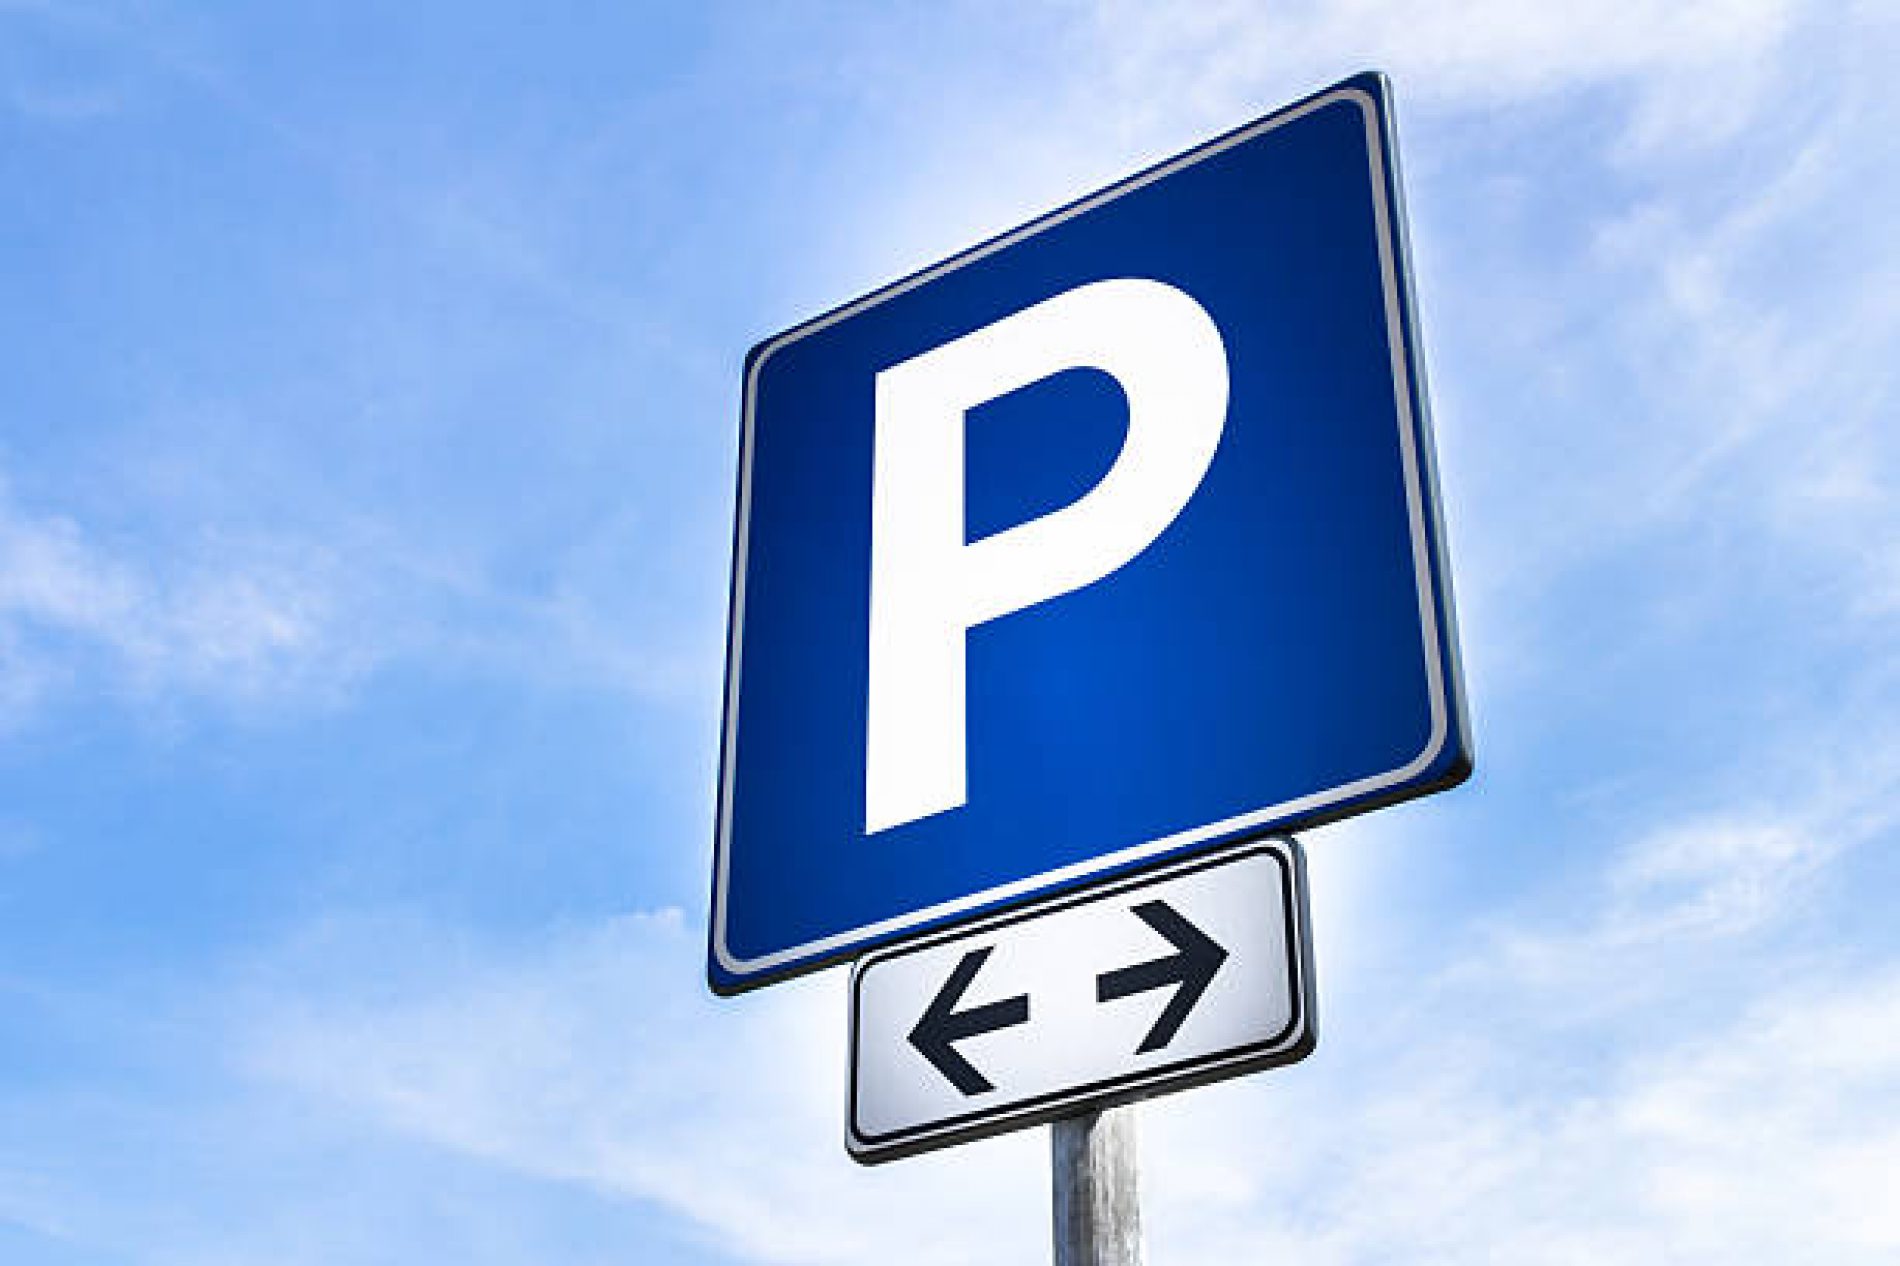 Rada Miasta będzie pracować nad zmianami w Strefach Płatnego Parkowania